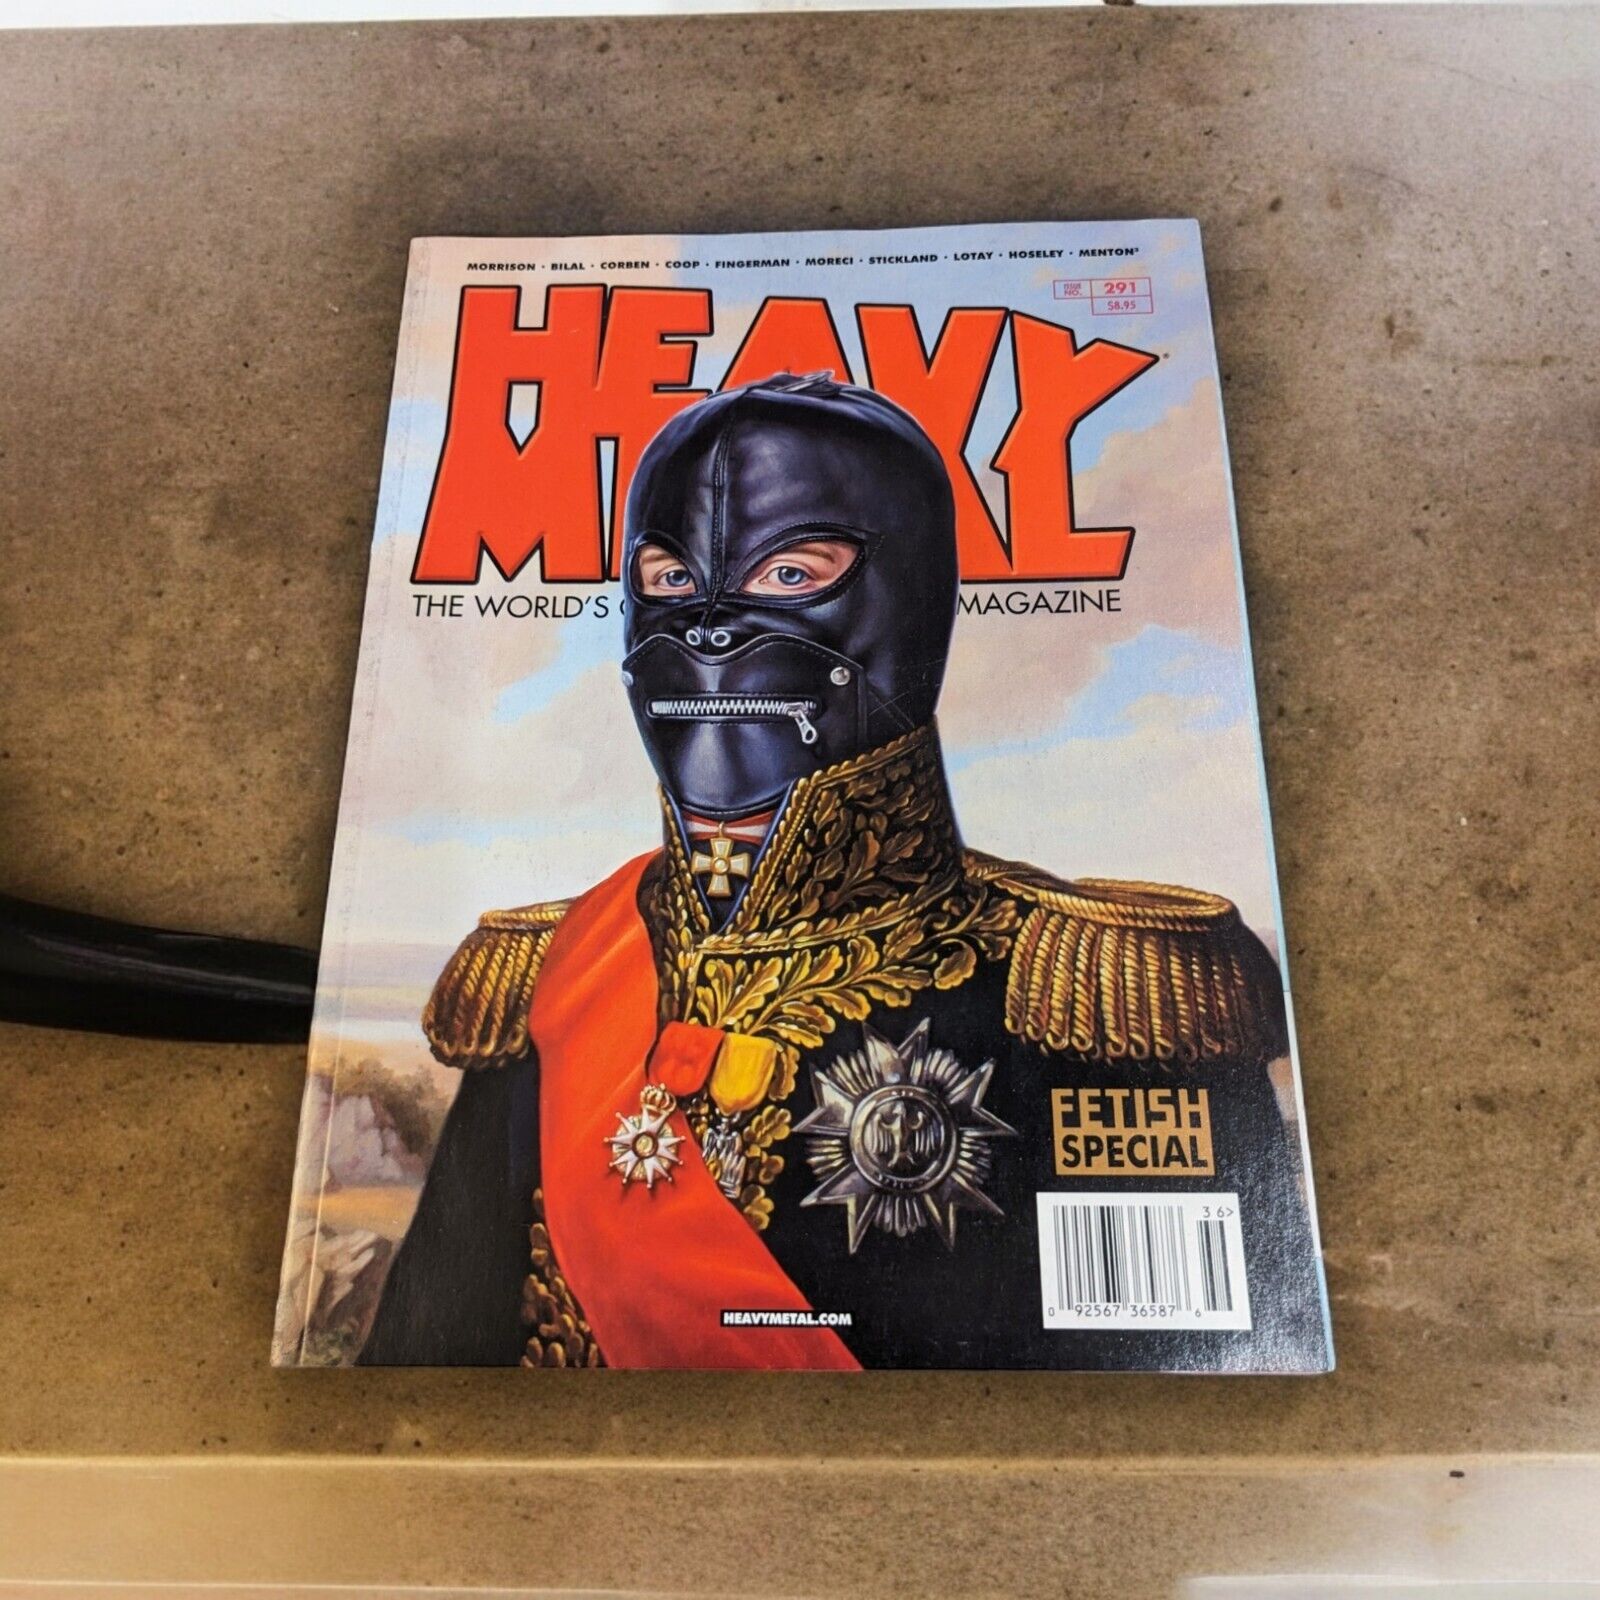 VTG 2018 Heavy Metal Magazine #291 VF Paul Neberra Cover Art Fetish Special